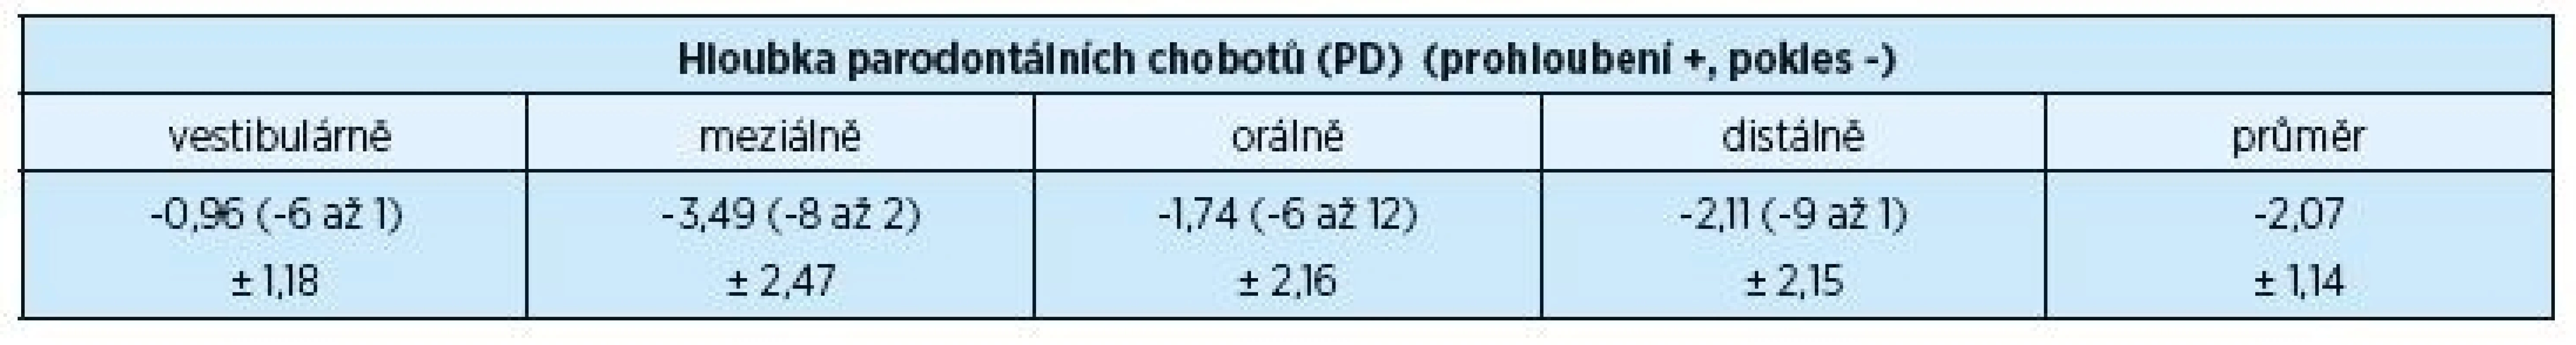 Průměrné hloubky parodontálních chobotů (PD) před chirurgickým výkonem a za dva roky po výkonu